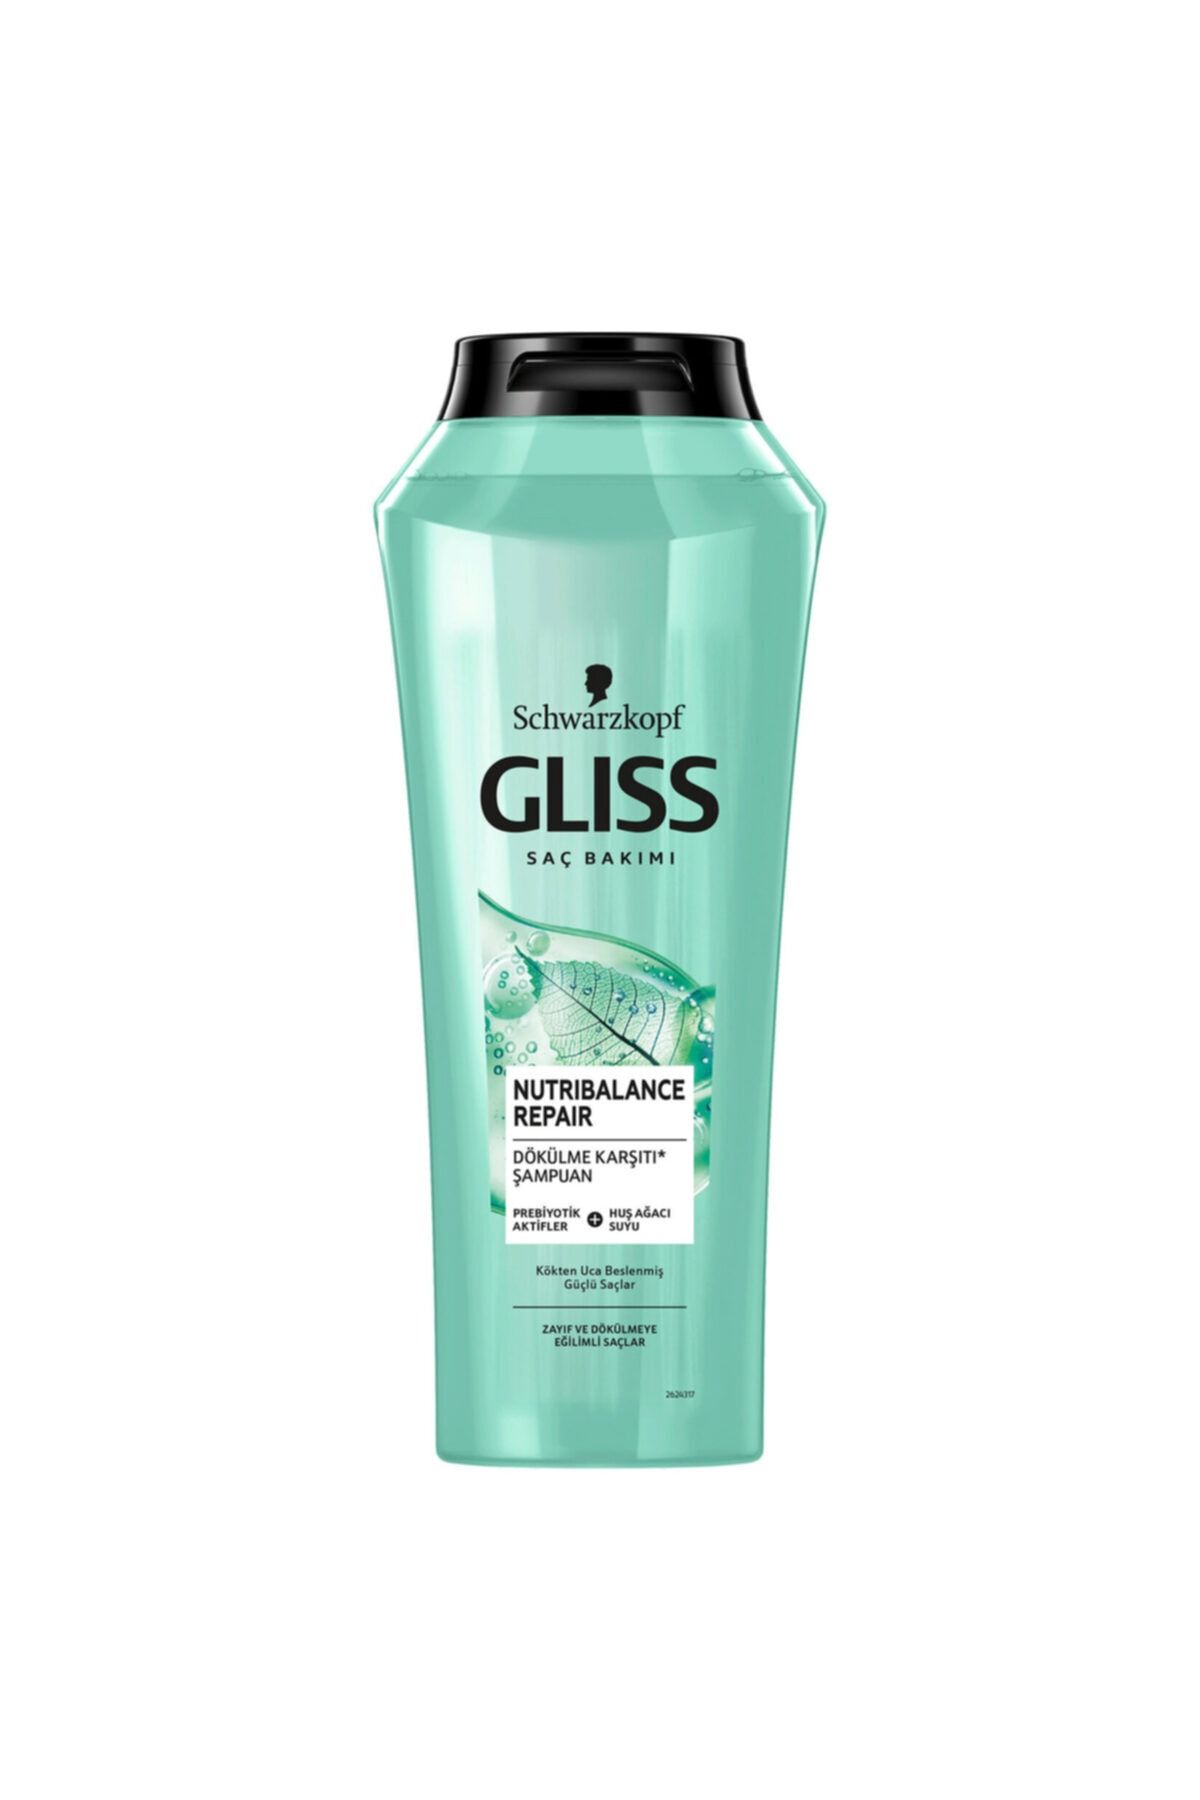 Gliss Nutribalance Dökülme Karşıtı Şampuan 500 ml